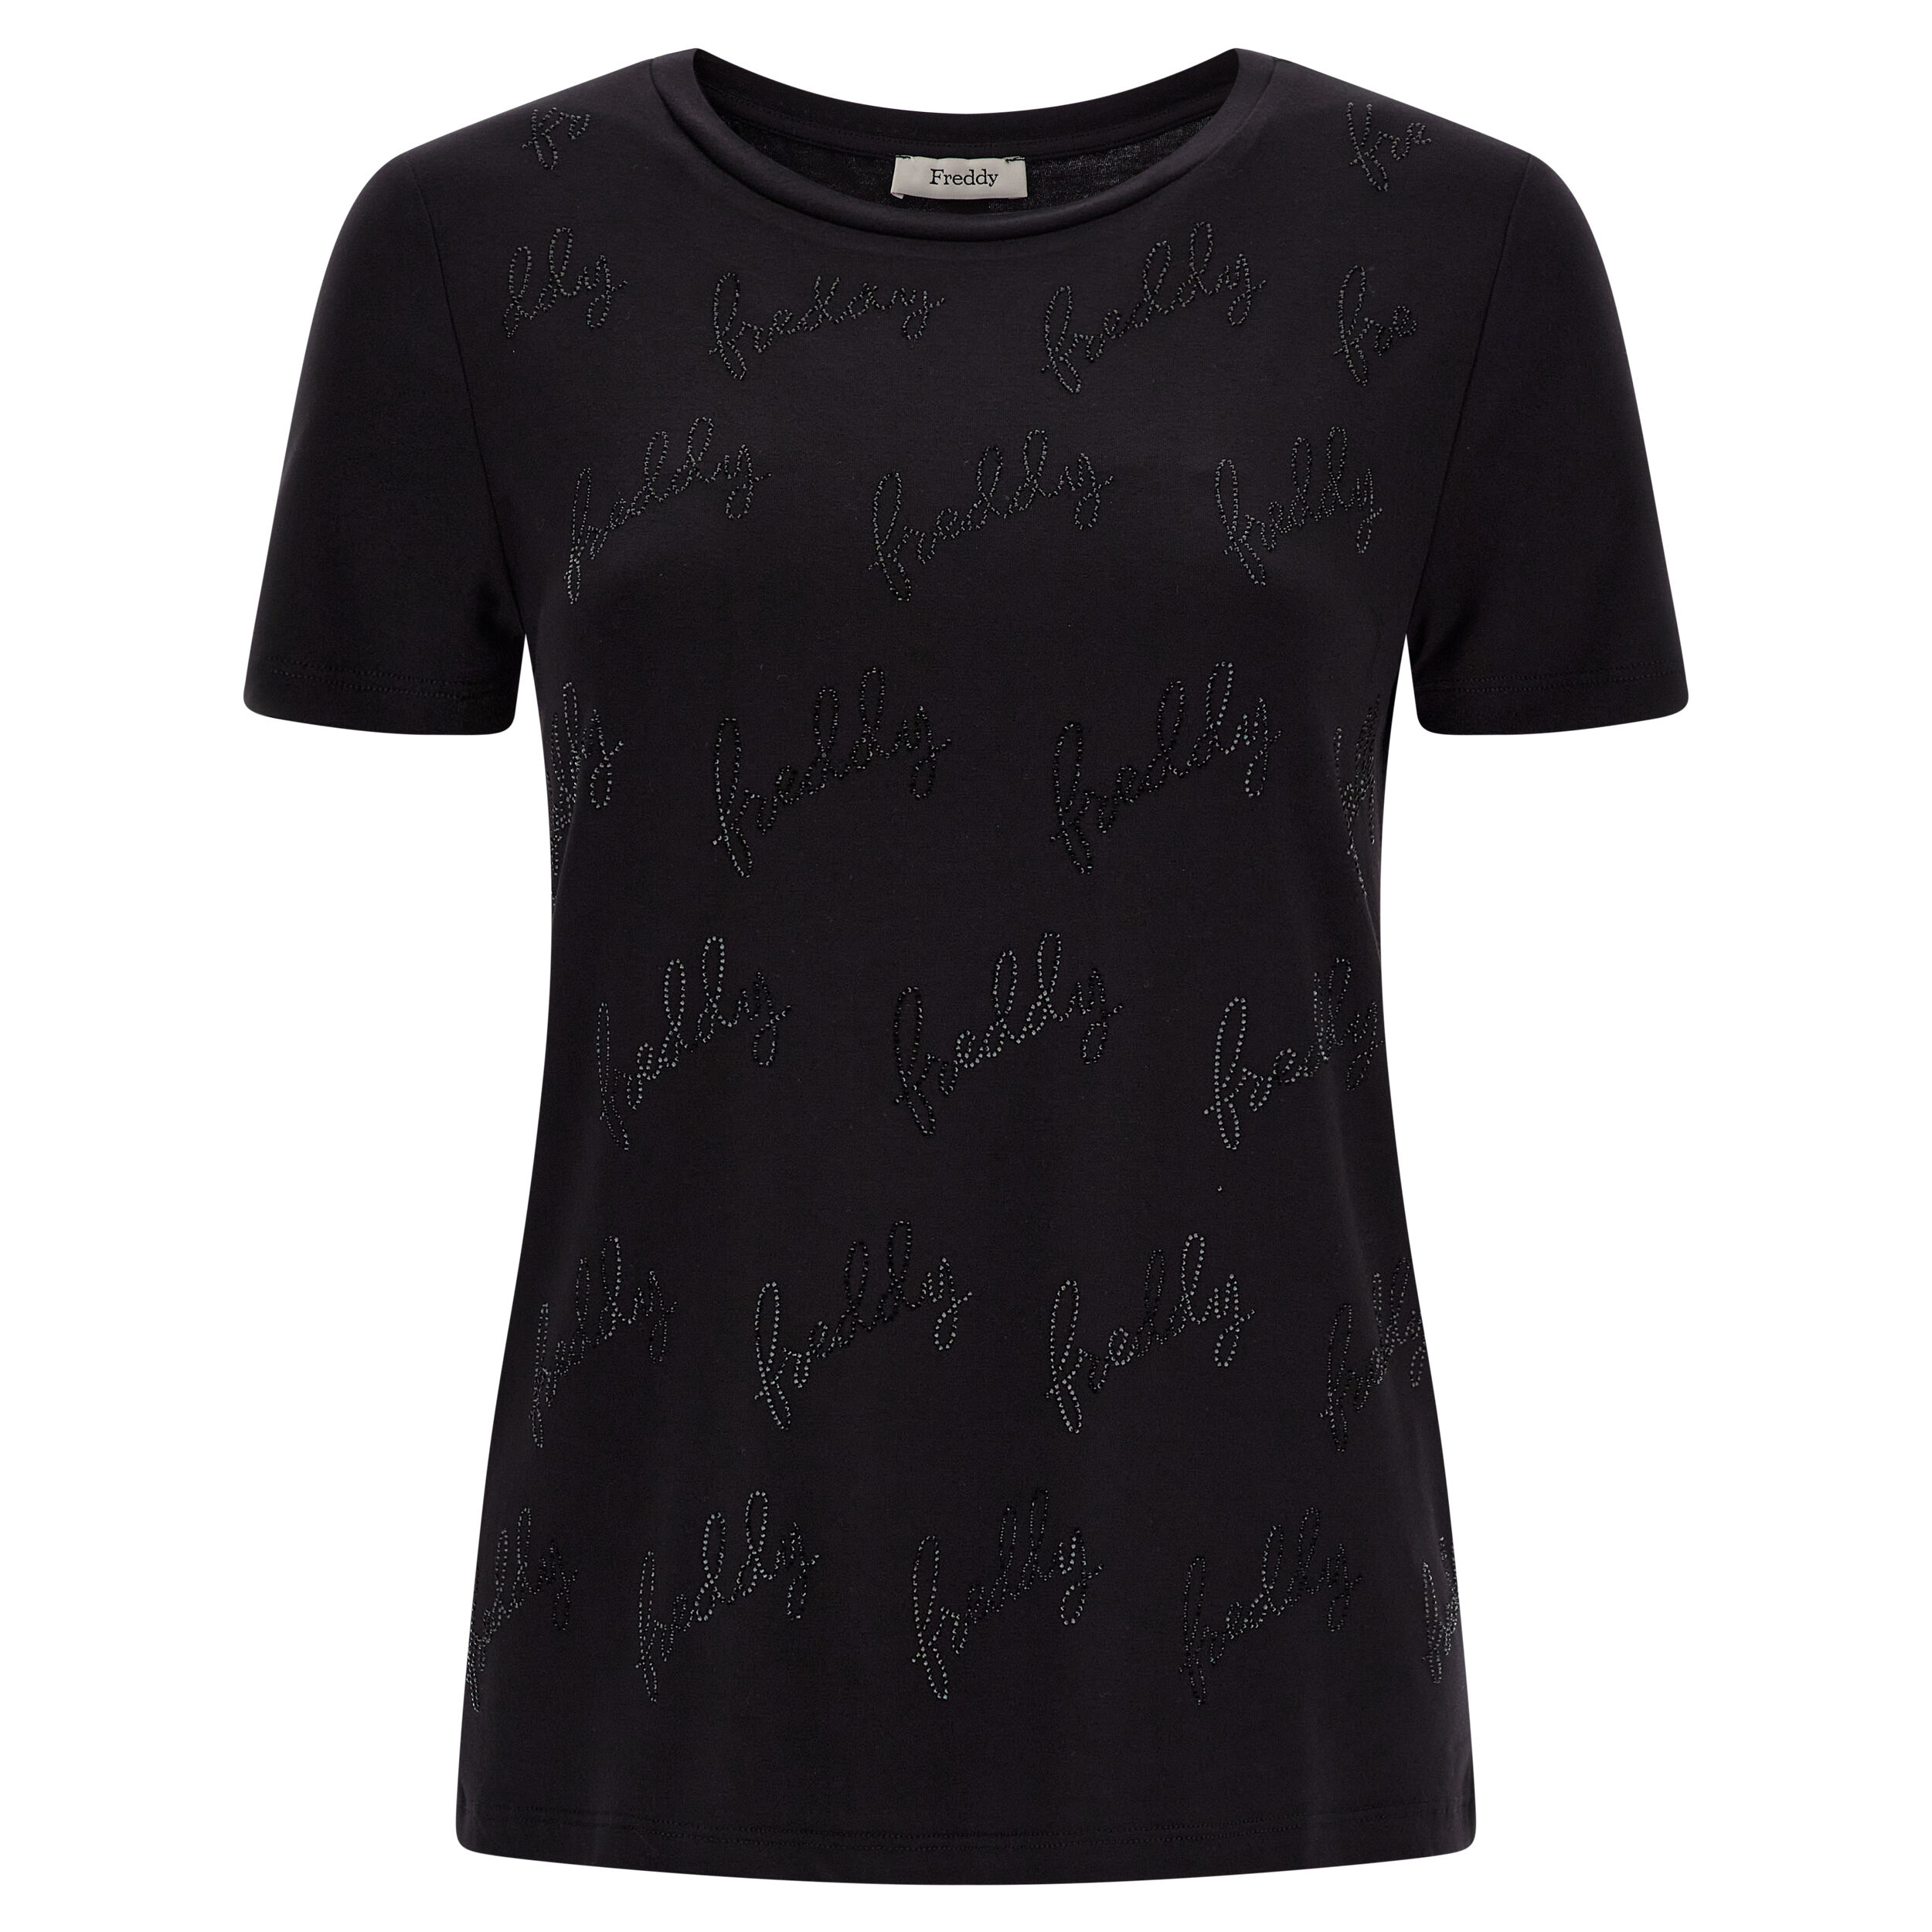 Freddy T-shirt con logo all-over in strass sul fronte Black- Gray Black Donna Medium